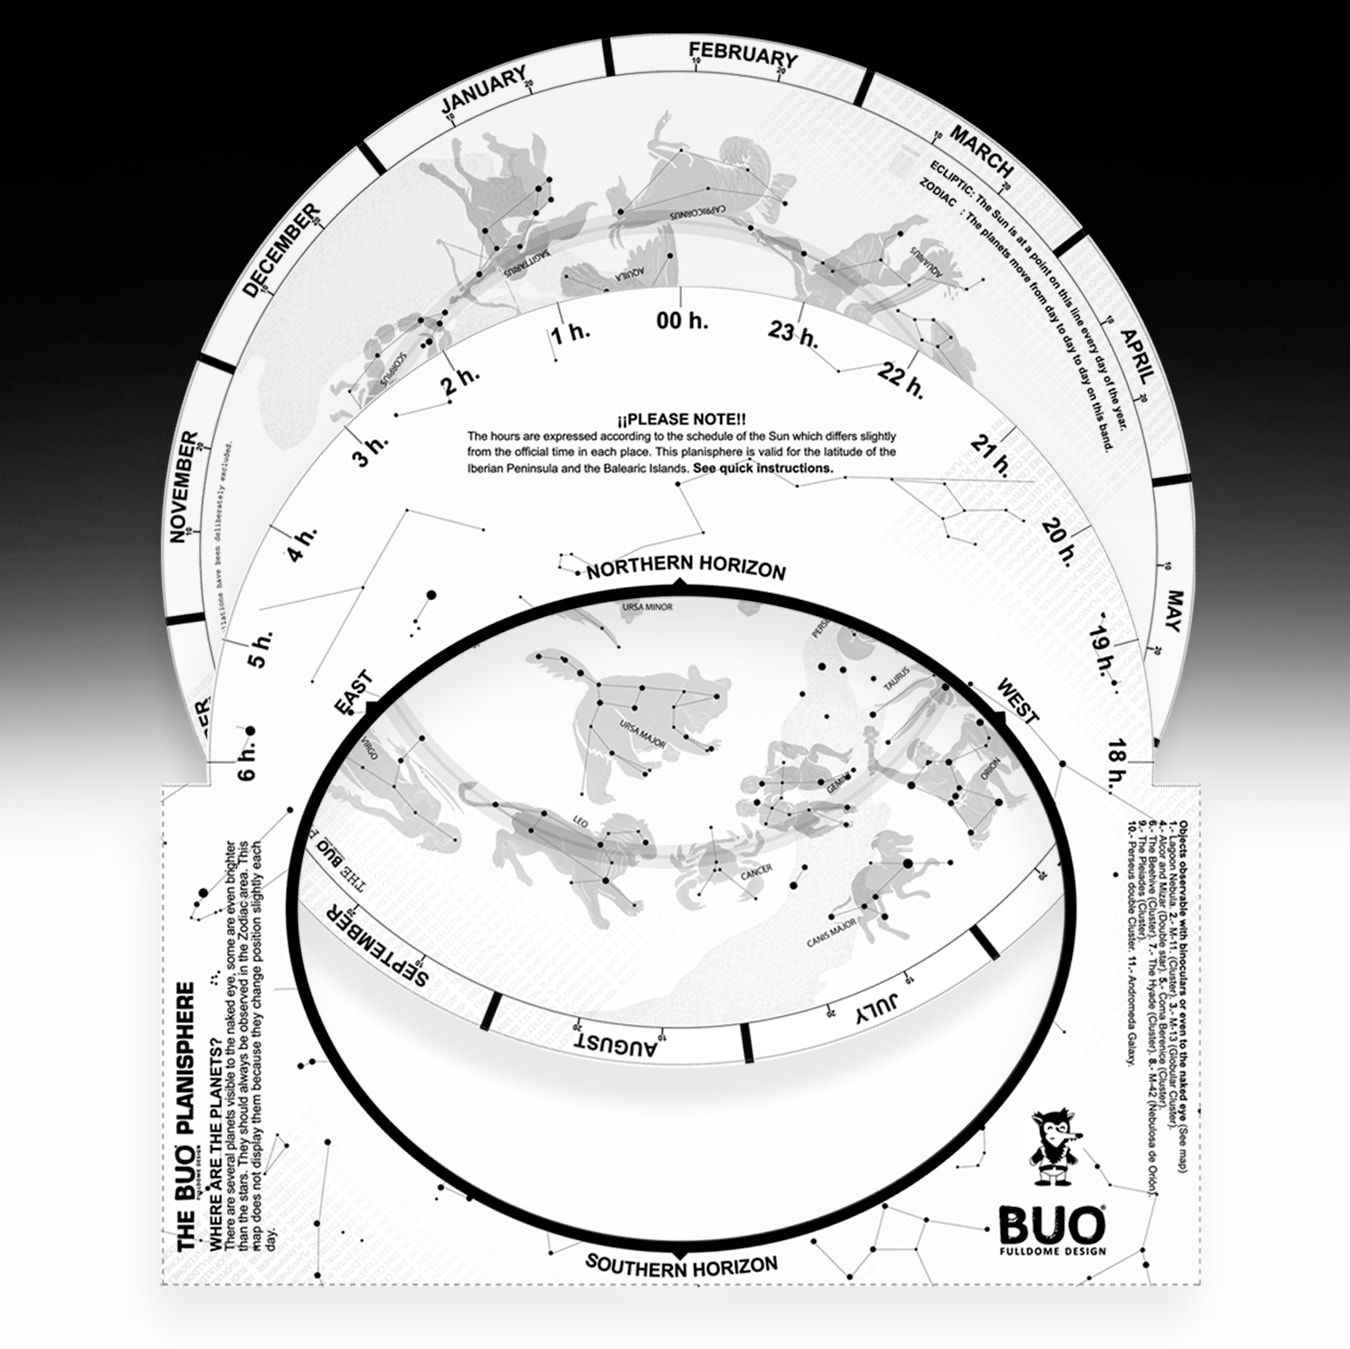 Planisferio Celeste Hemisferio Norte, gratis, descargar e imprimir, recurso para escuelas, astronomía.